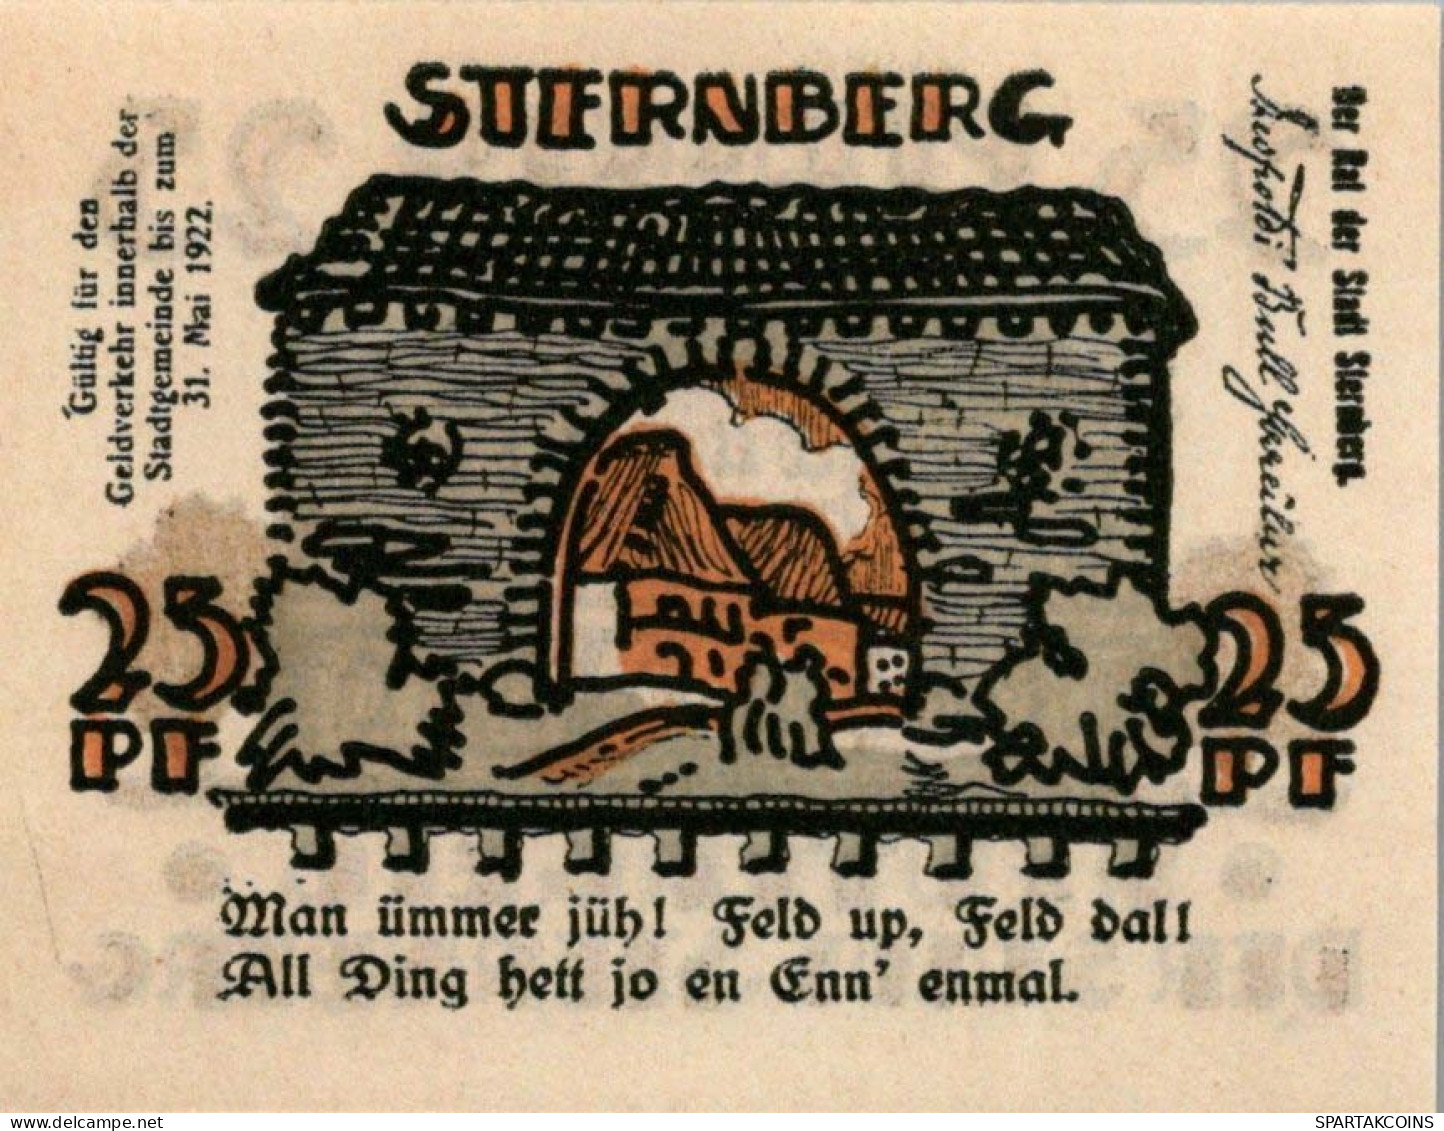 25 PFENNIG 1922 Stadt STERNBERG Mecklenburg-Schwerin UNC DEUTSCHLAND #PI946 - [11] Lokale Uitgaven